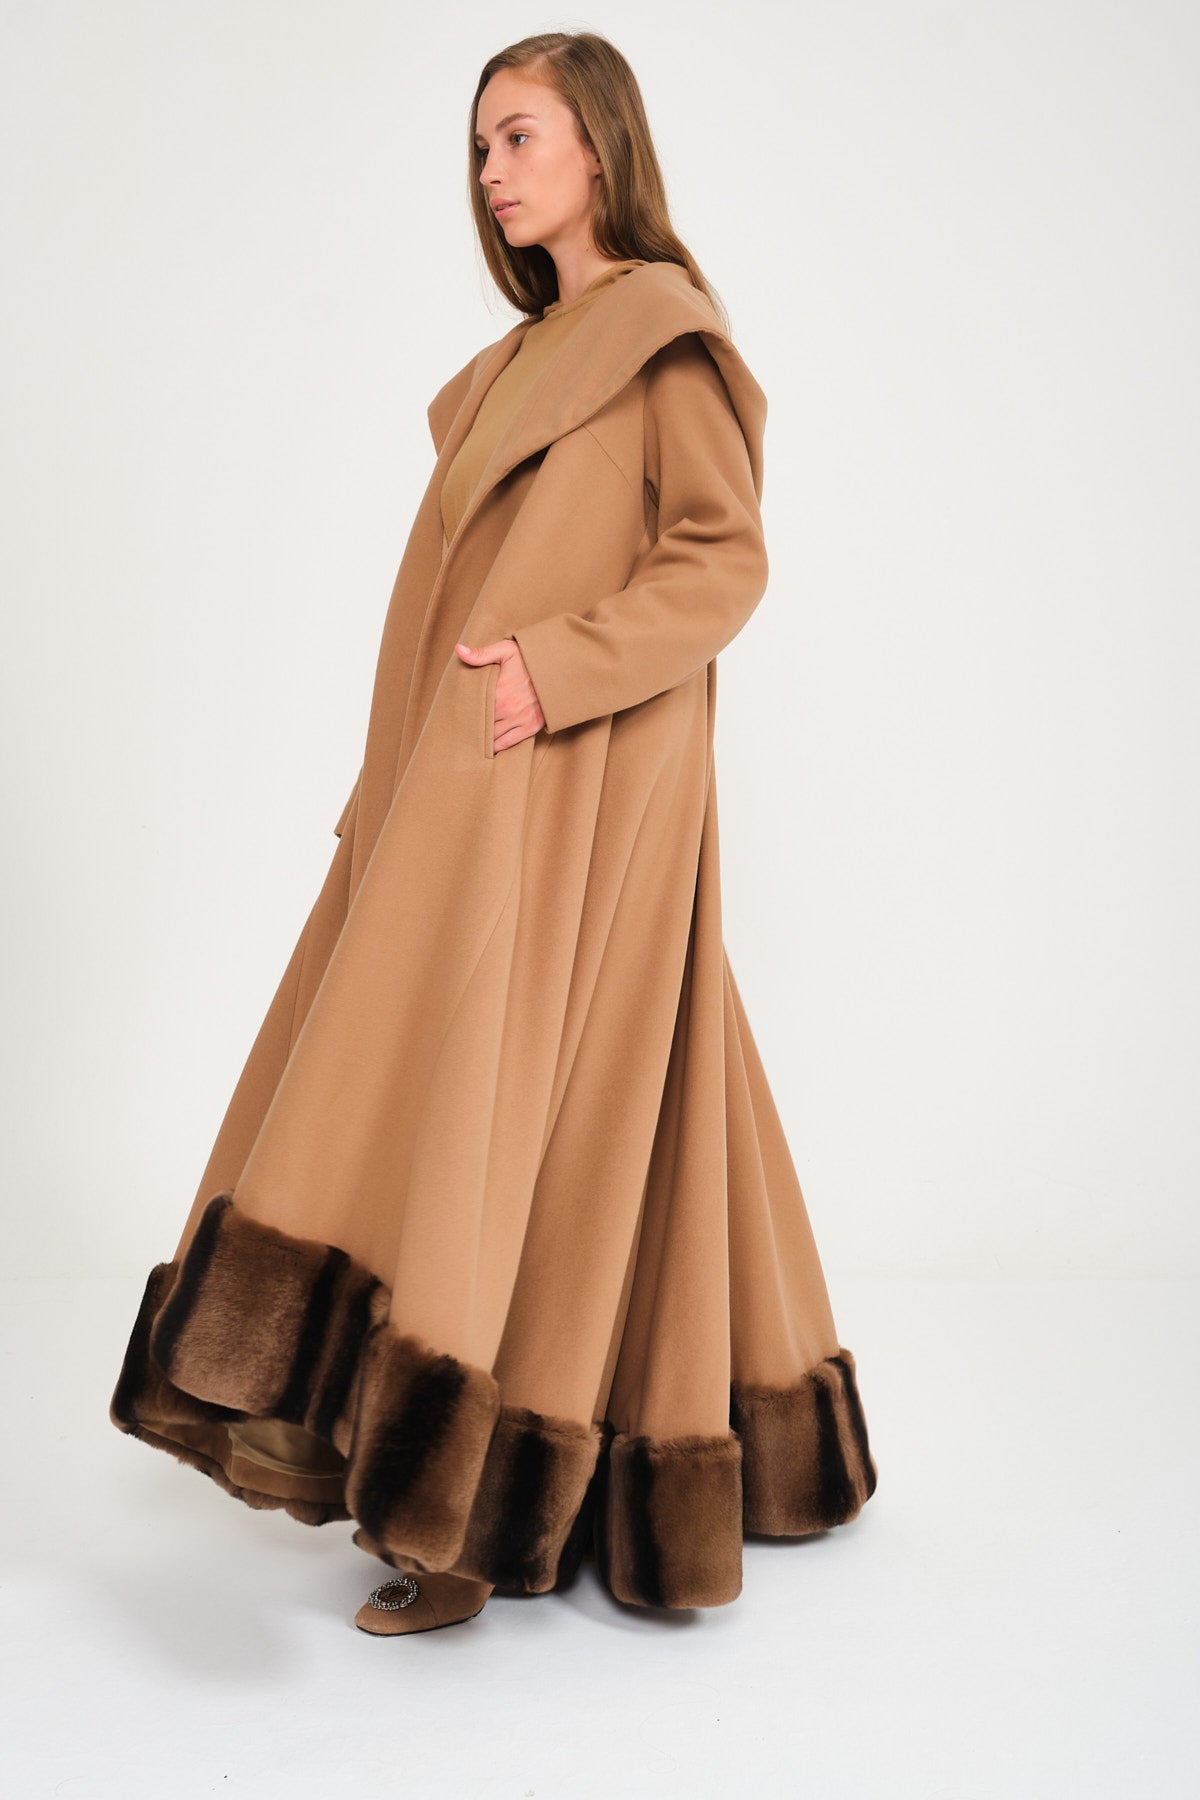 Honey Color Hooded Wool Rex Fur Abaya